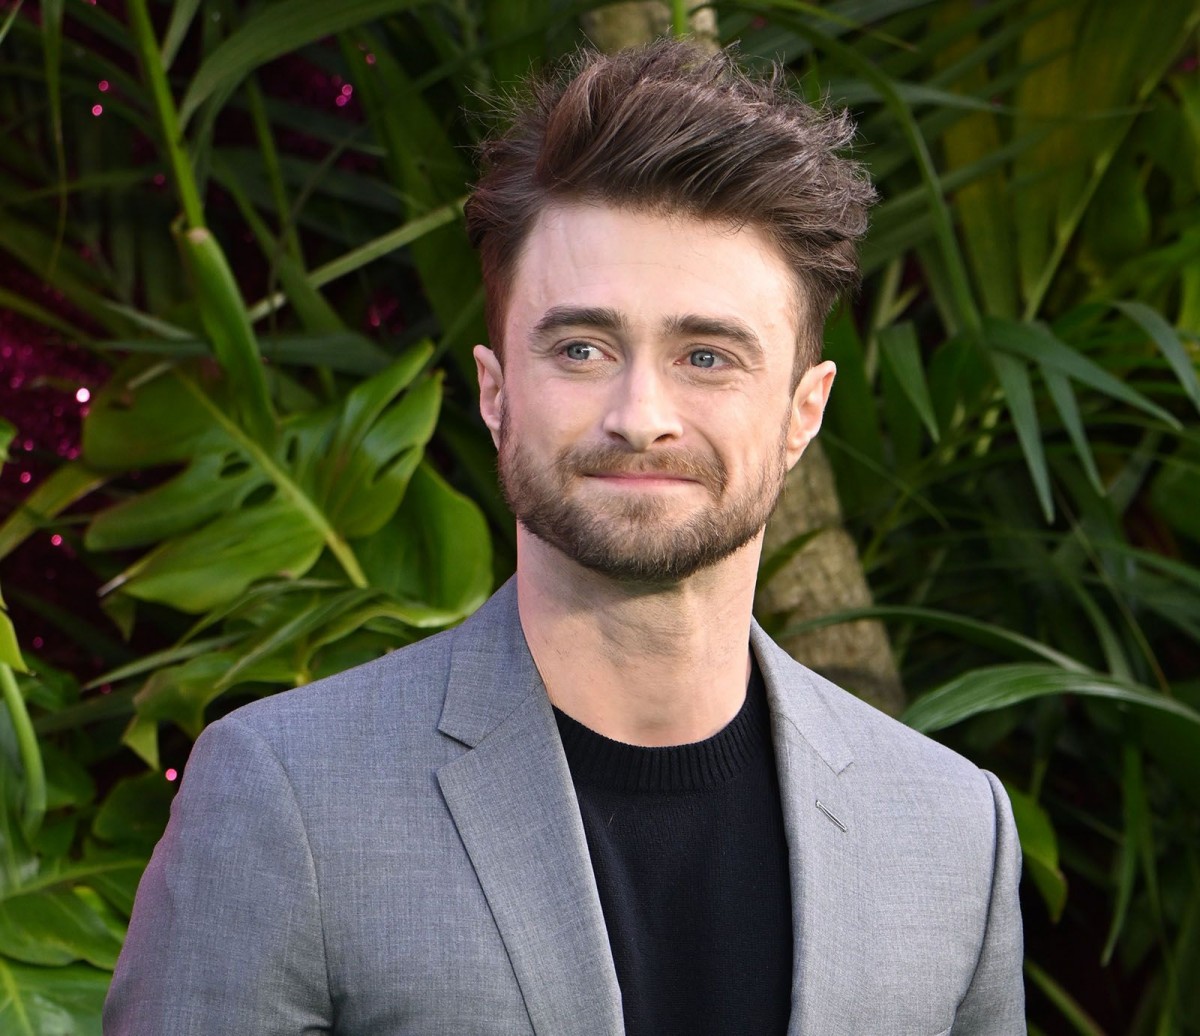 Daniel Radcliffe défie J.K Rowling dans une lutte pour les droits transgenres